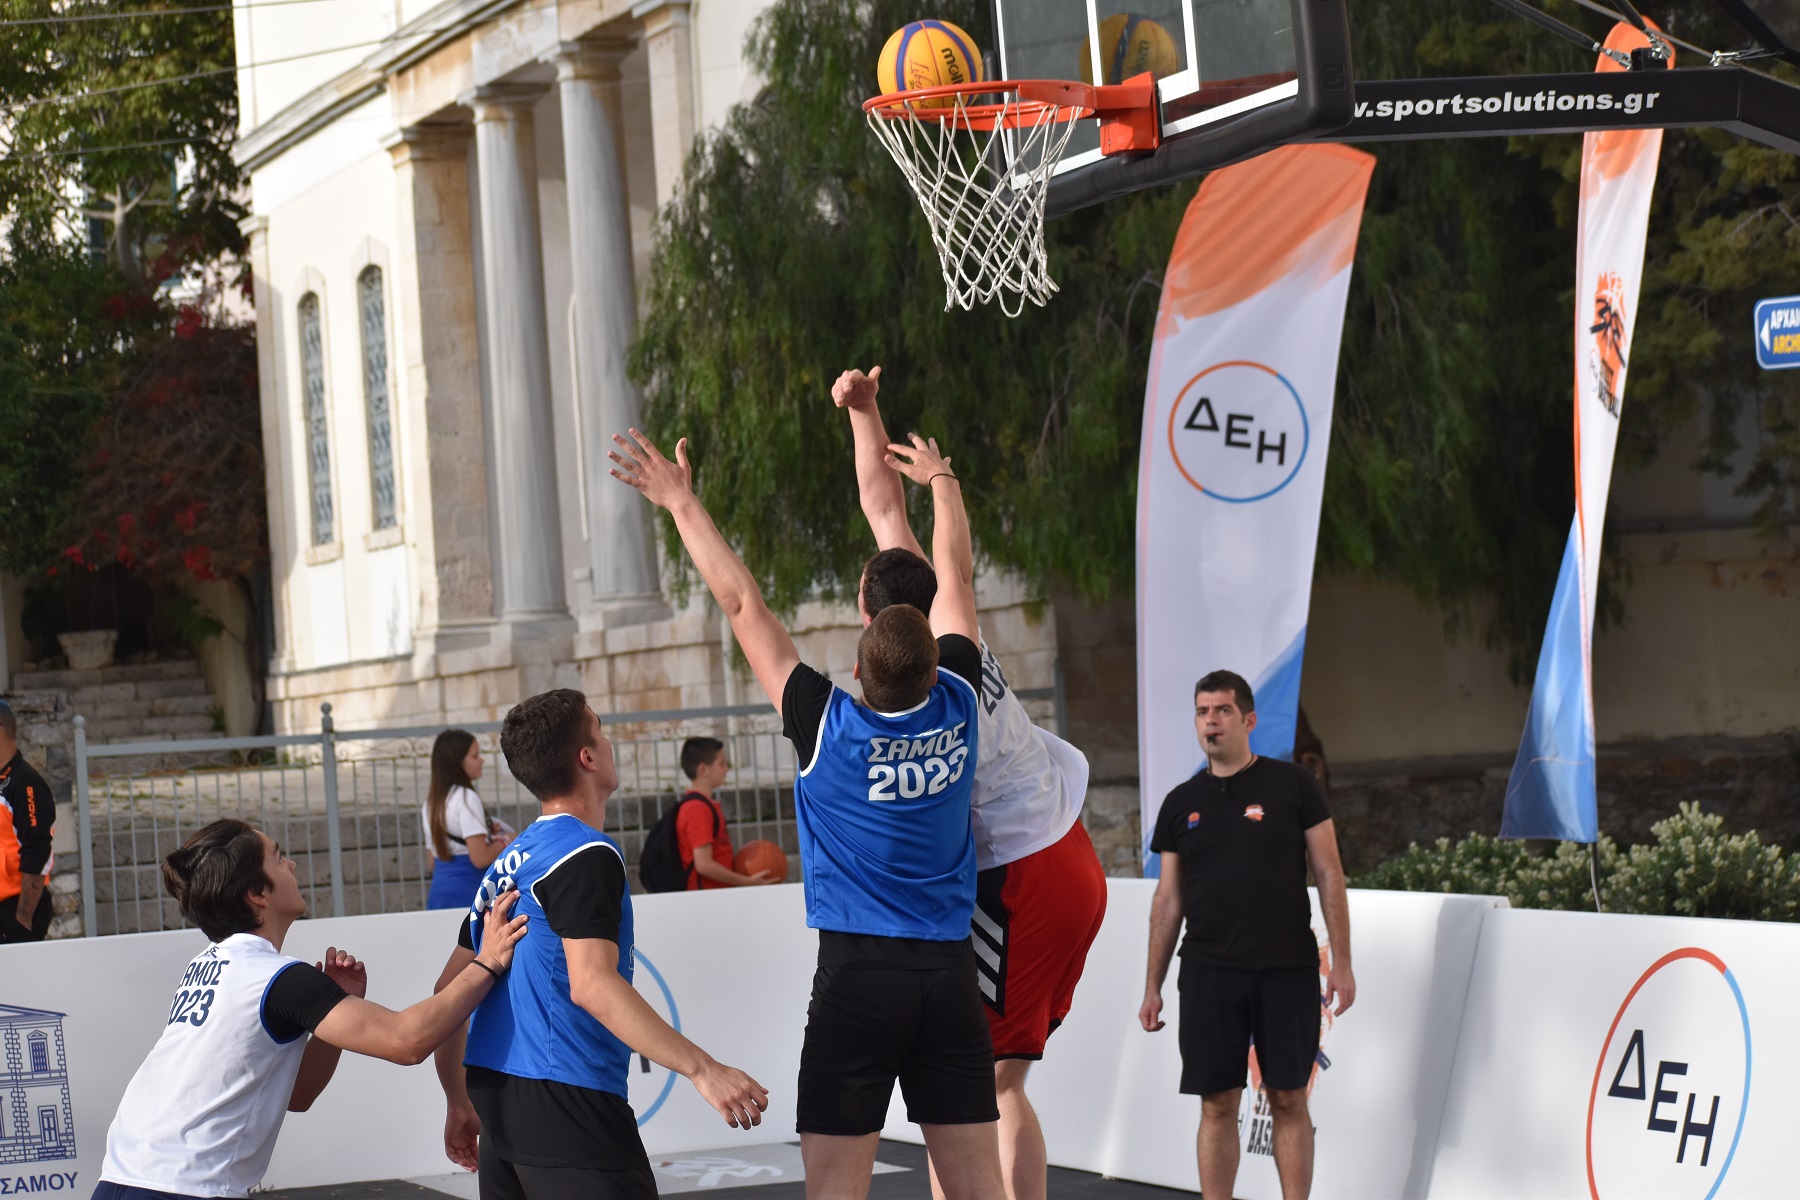 Με εκατοντάδες συμμετοχές από όλη την Ελλάδα  ολοκληρώθηκε το 3×3 ΔΕΗ Street Basketball